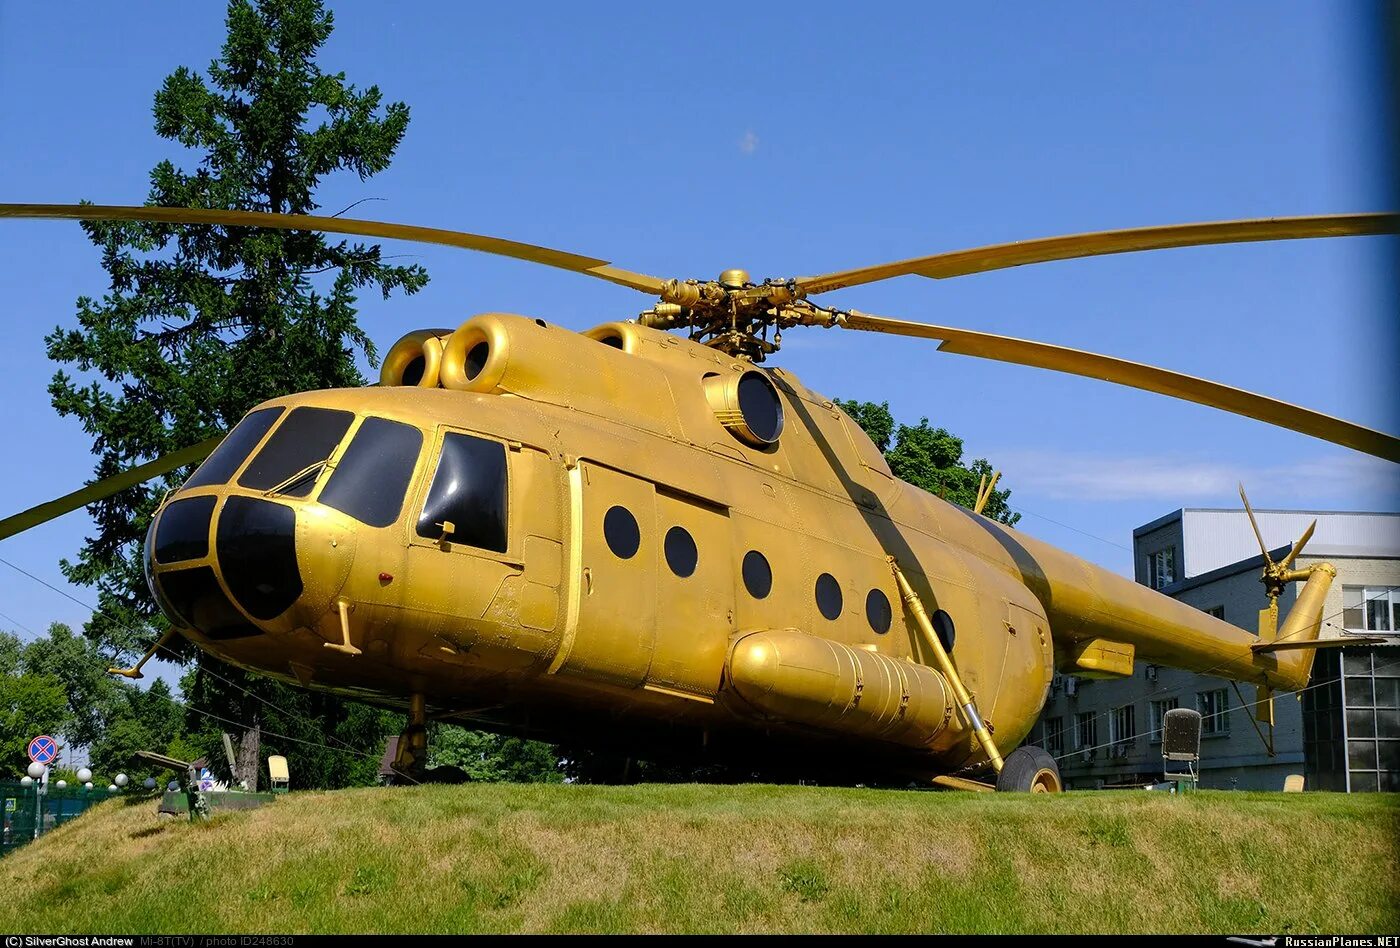 Национальный центр миля. Золотой вертолет ми 8. Вертолетный завод в Томилино. Вертолет миля ми 8. Золотой вертолет Томилино.